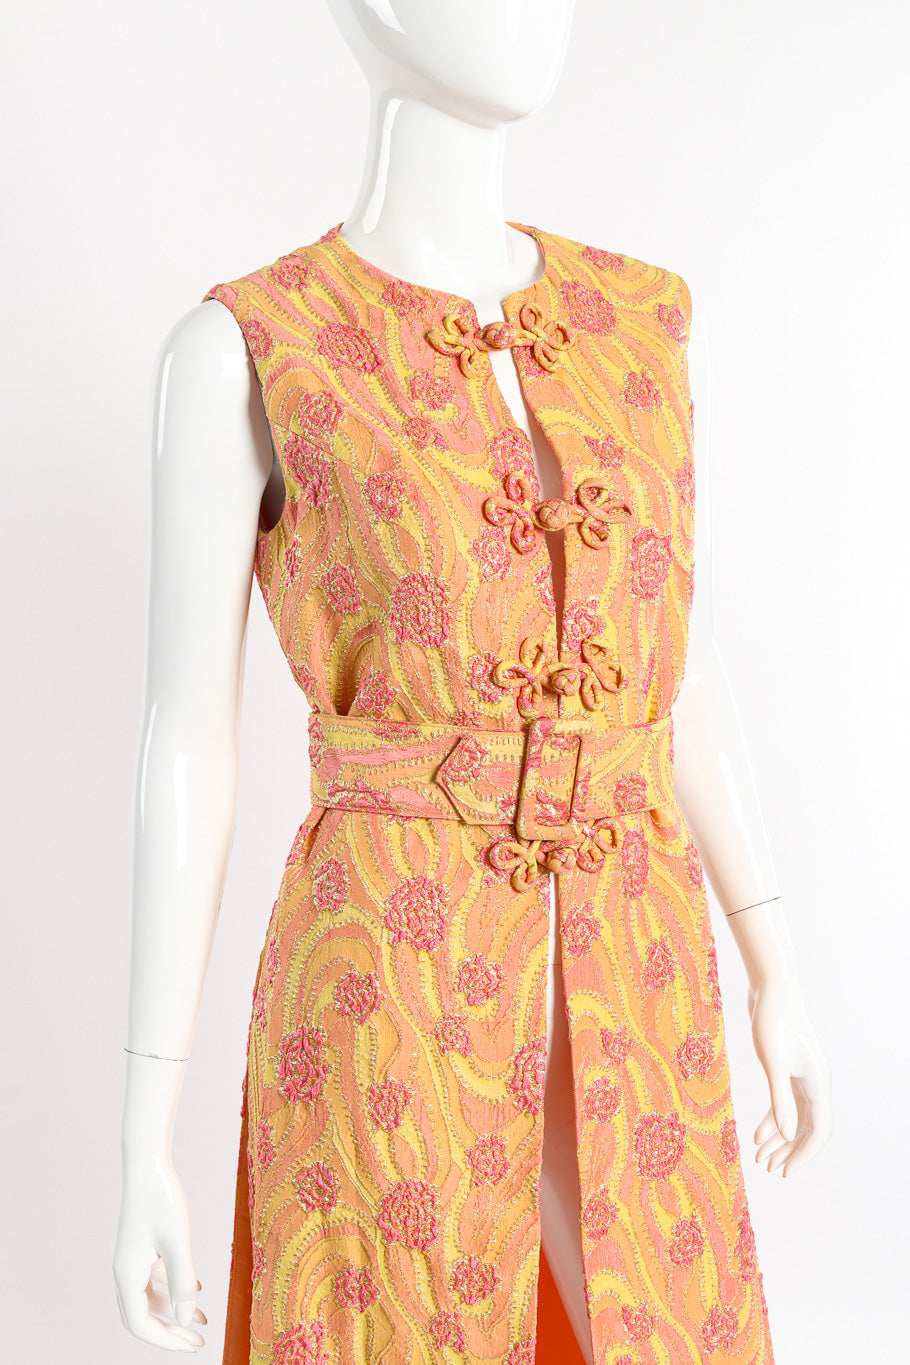 Vintage Sandine Originals Lamé Brocade Tunic Dress front view on mannequin closeup @recessla